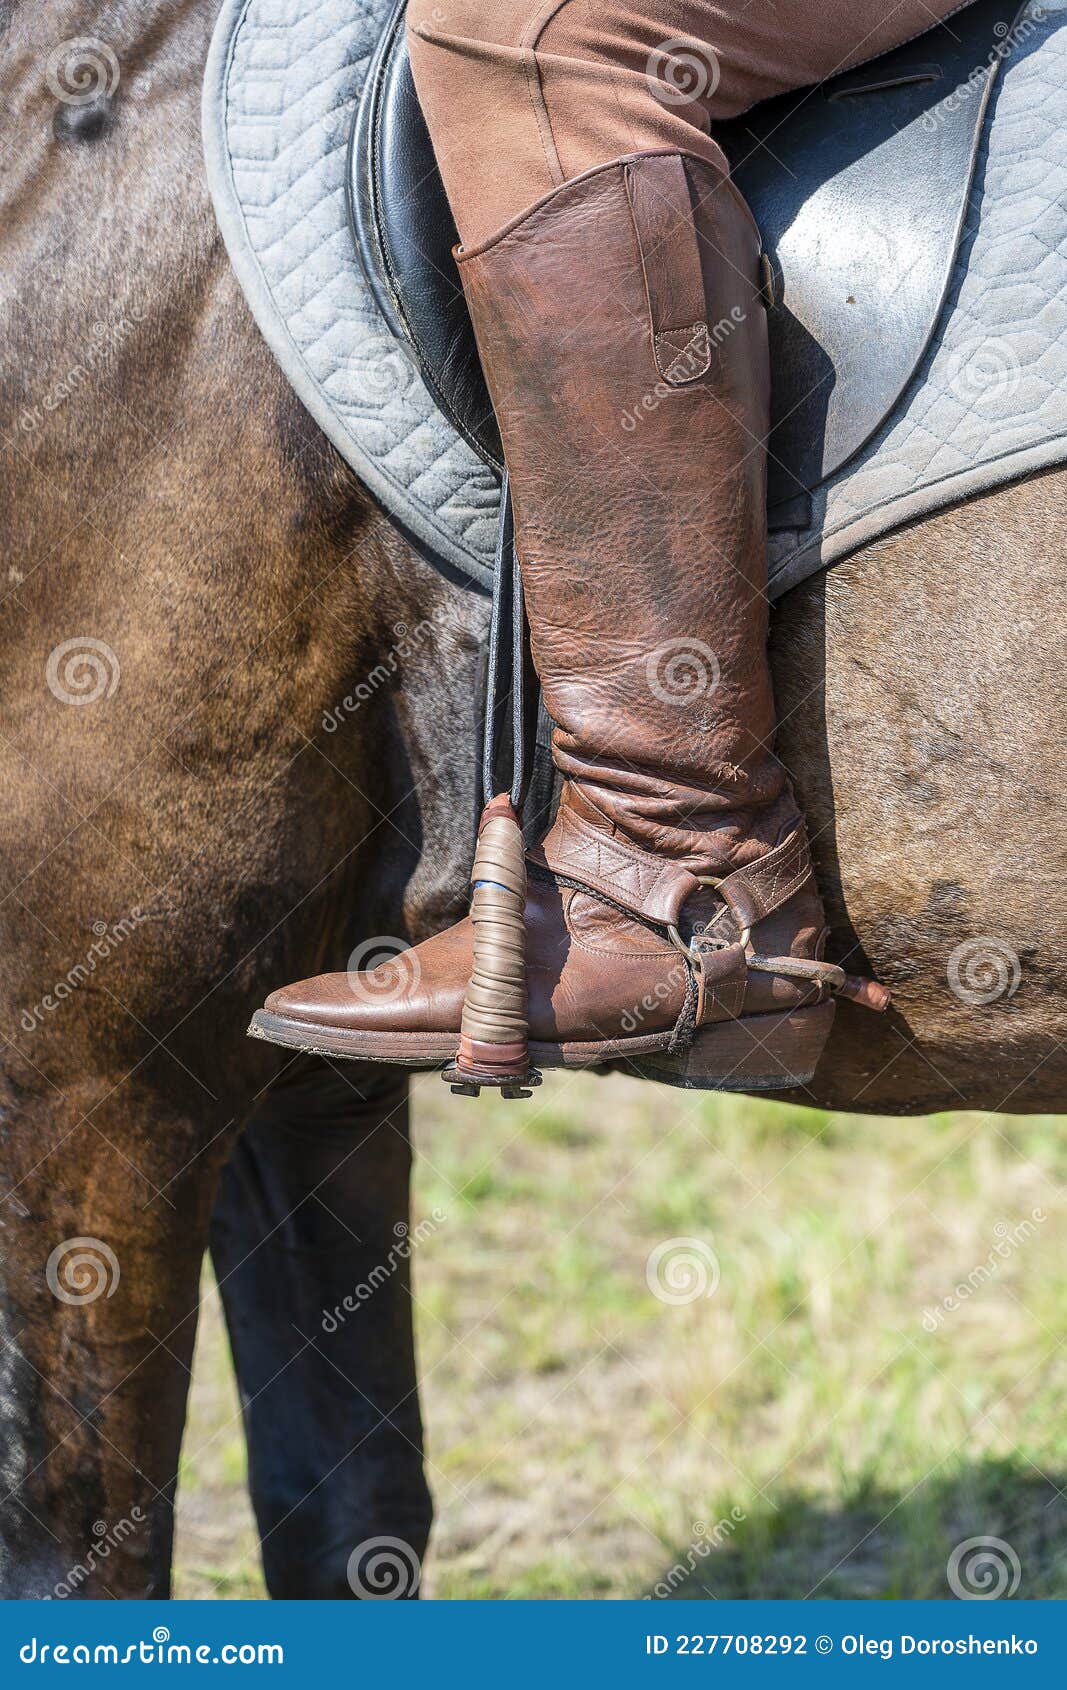 Botas De Equitación De Jockey En El Arranque. Hombre Montando Un